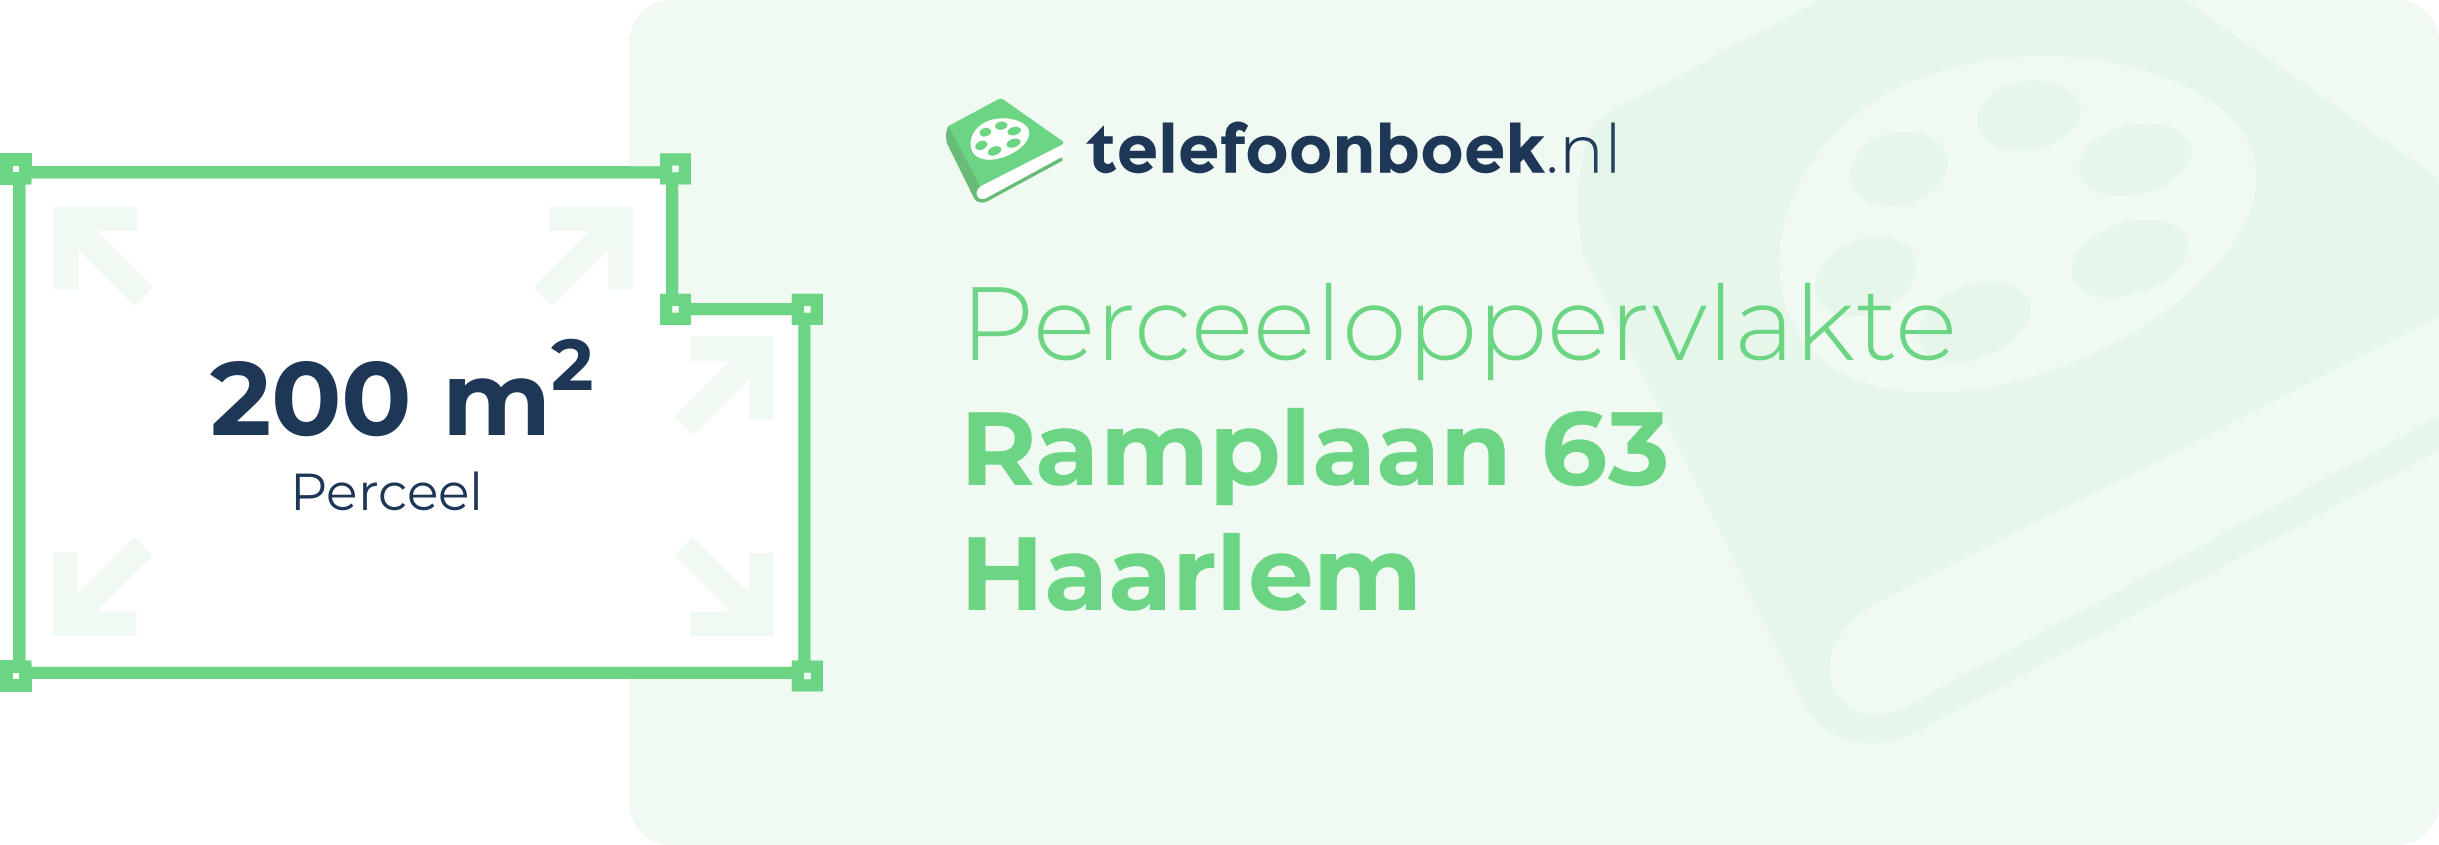 Perceeloppervlakte Ramplaan 63 Haarlem